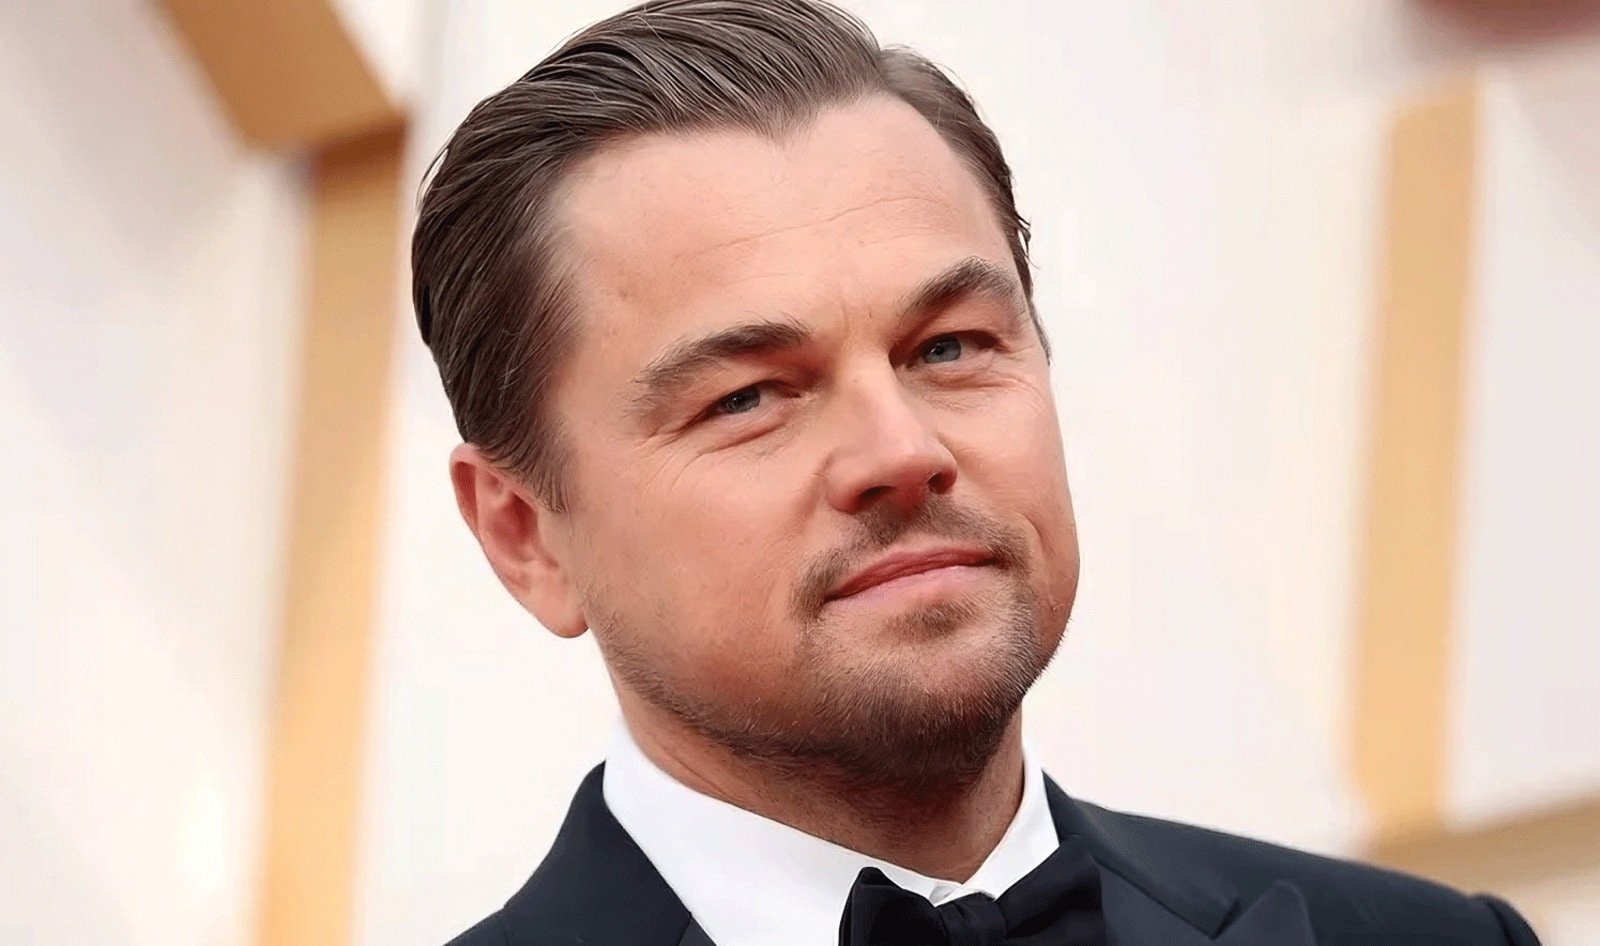 Tìm hiểu đôi nét về diễn viên nổi tiếng Hollywood Leonardo DiCaprio